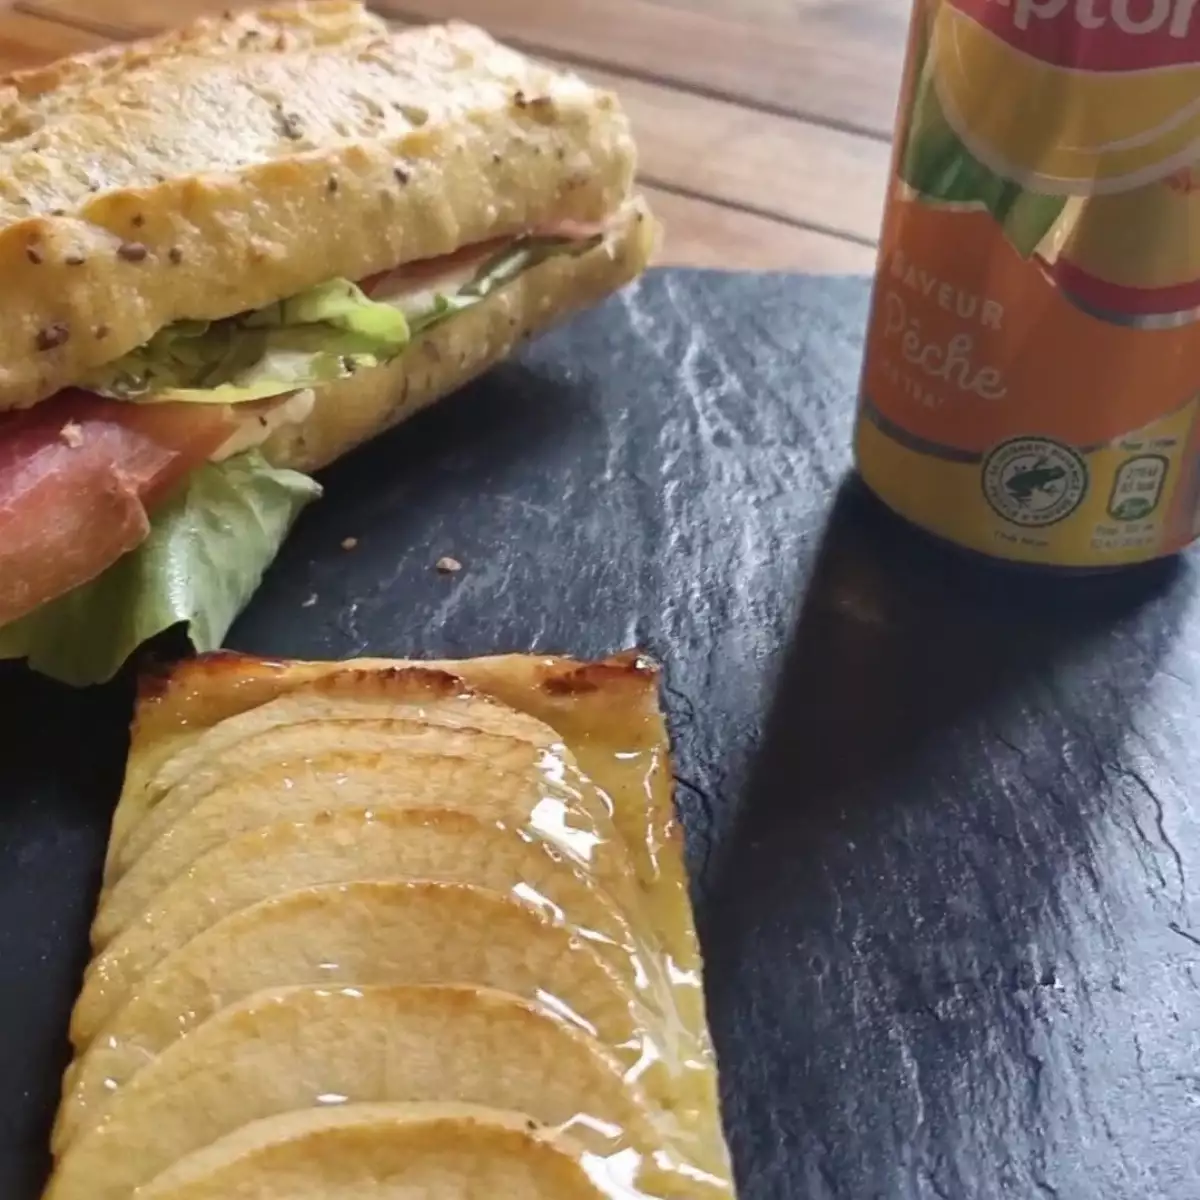 Formule sandwich 8,90 €